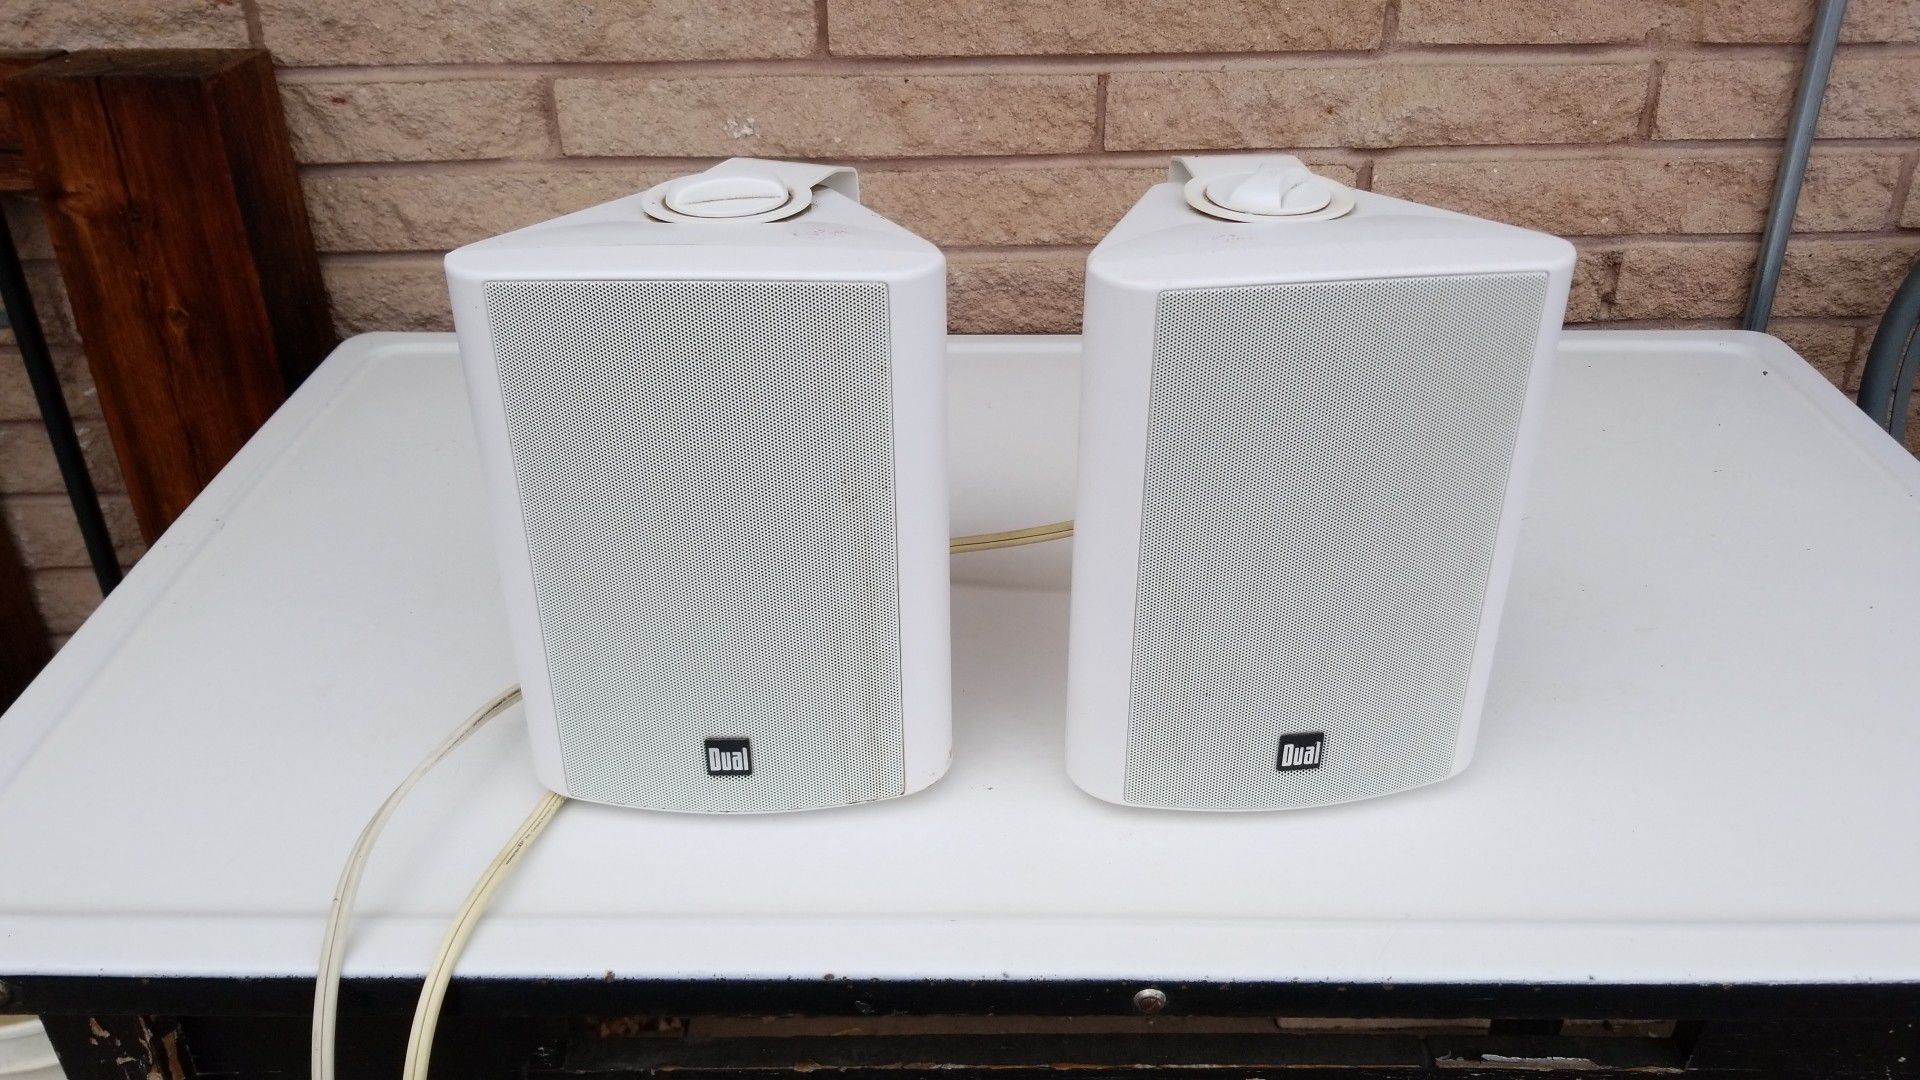 Dual indoor/outdoor speakers